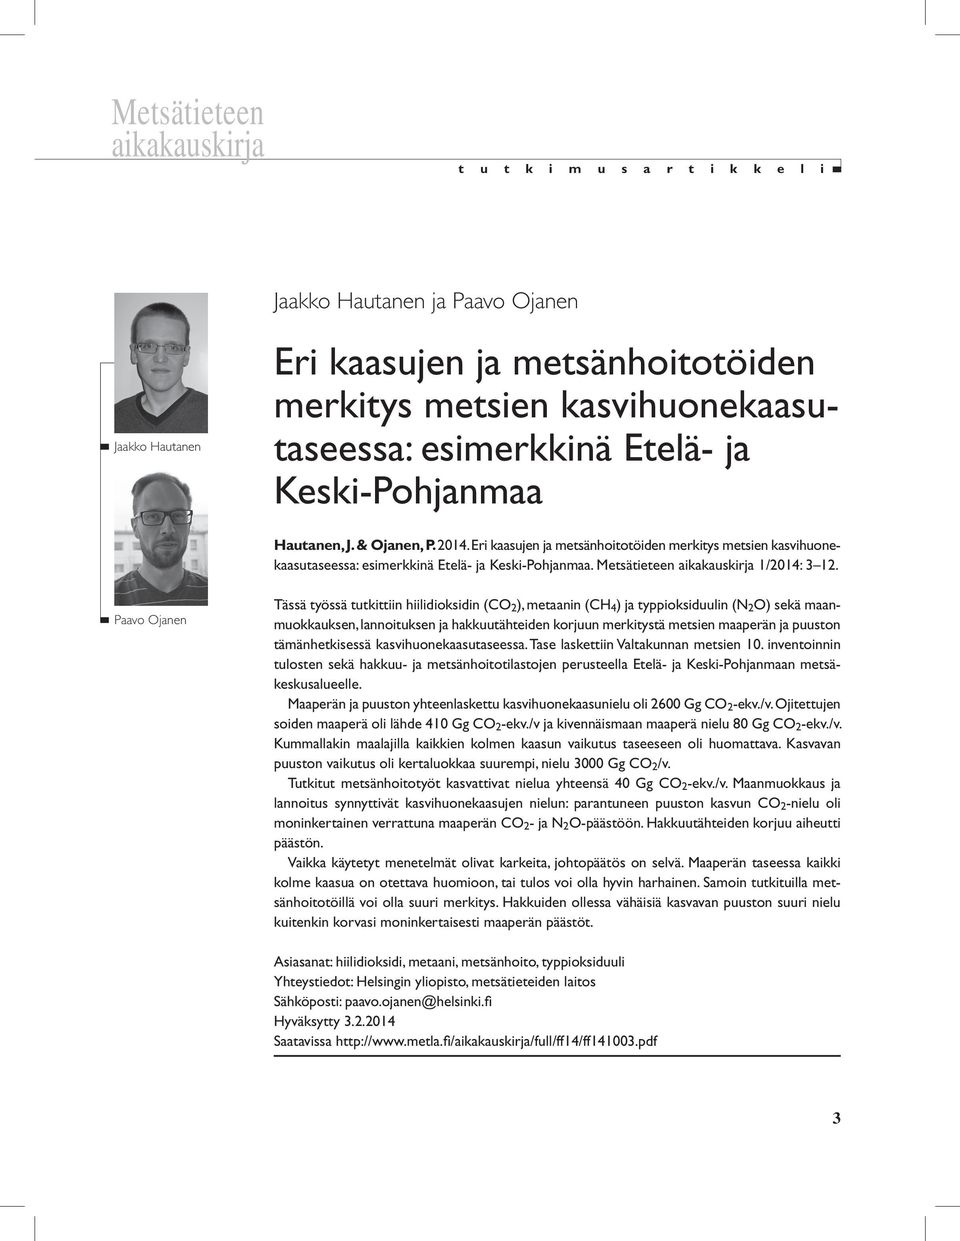 Metsätieteen aikakauskirja 1/2014: 3 12.